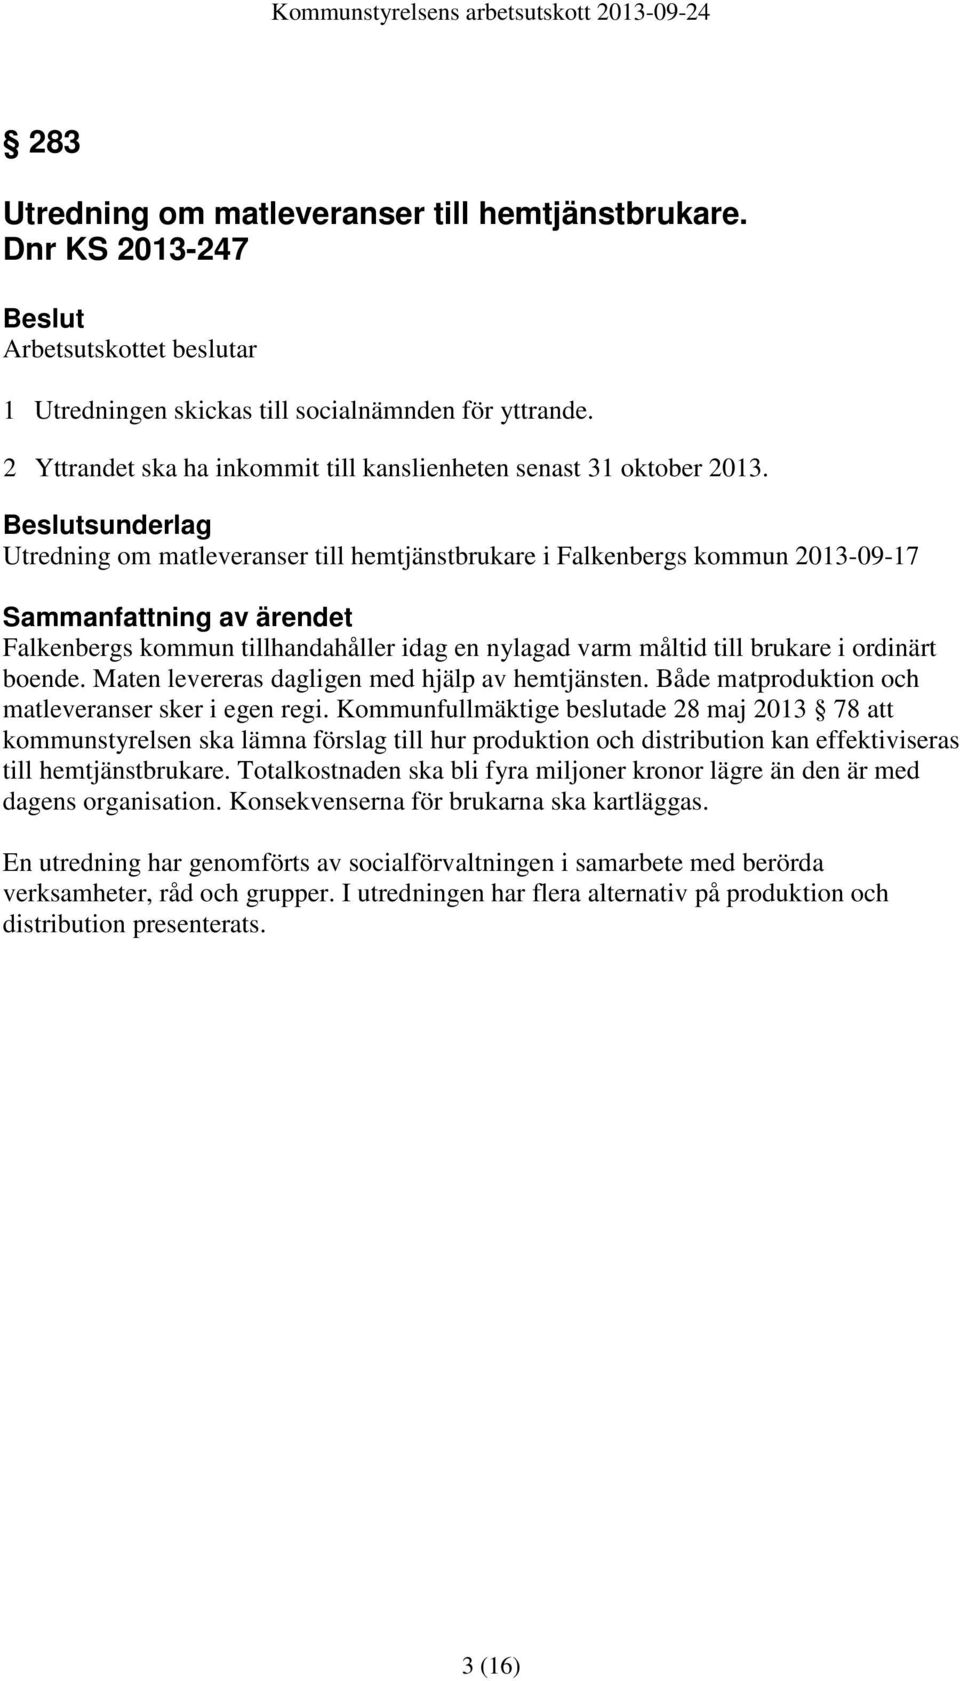 Beslutsunderlag Utredning om matleveranser till hemtjänstbrukare i Falkenbergs kommun 2013-09-17 Sammanfattning av ärendet Falkenbergs kommun tillhandahåller idag en nylagad varm måltid till brukare